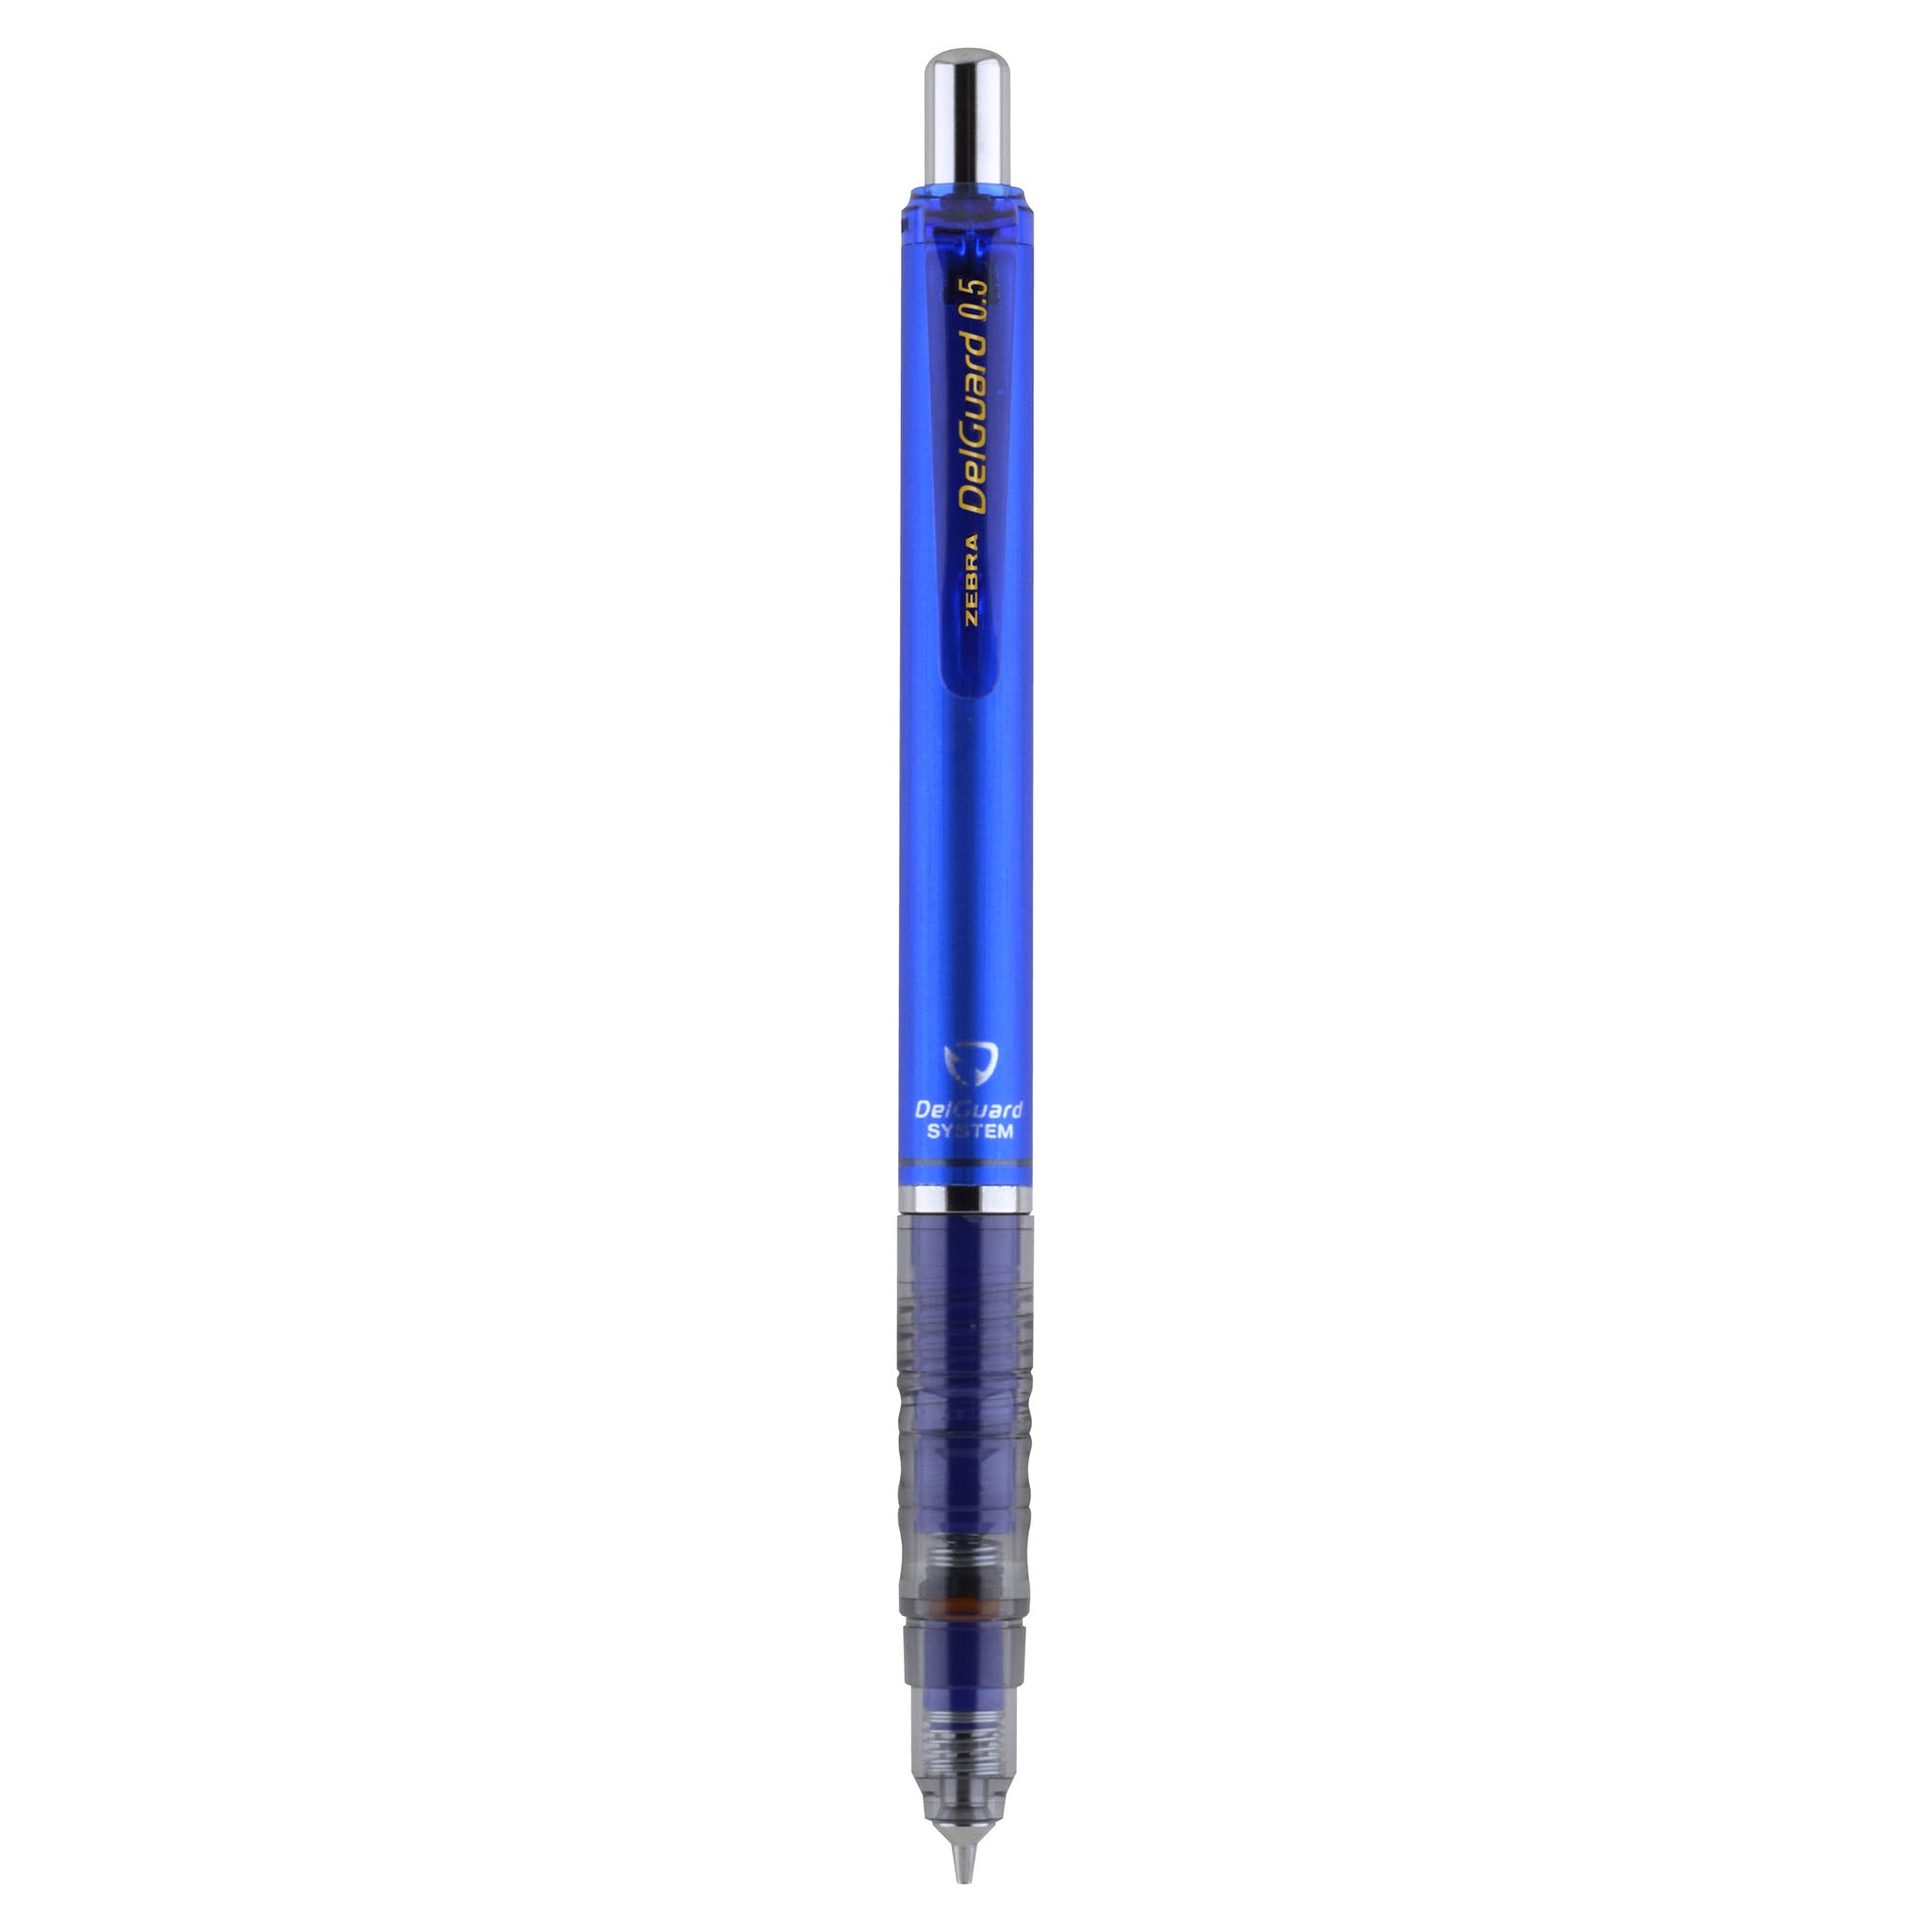 DelGuard Mechanical Pencil